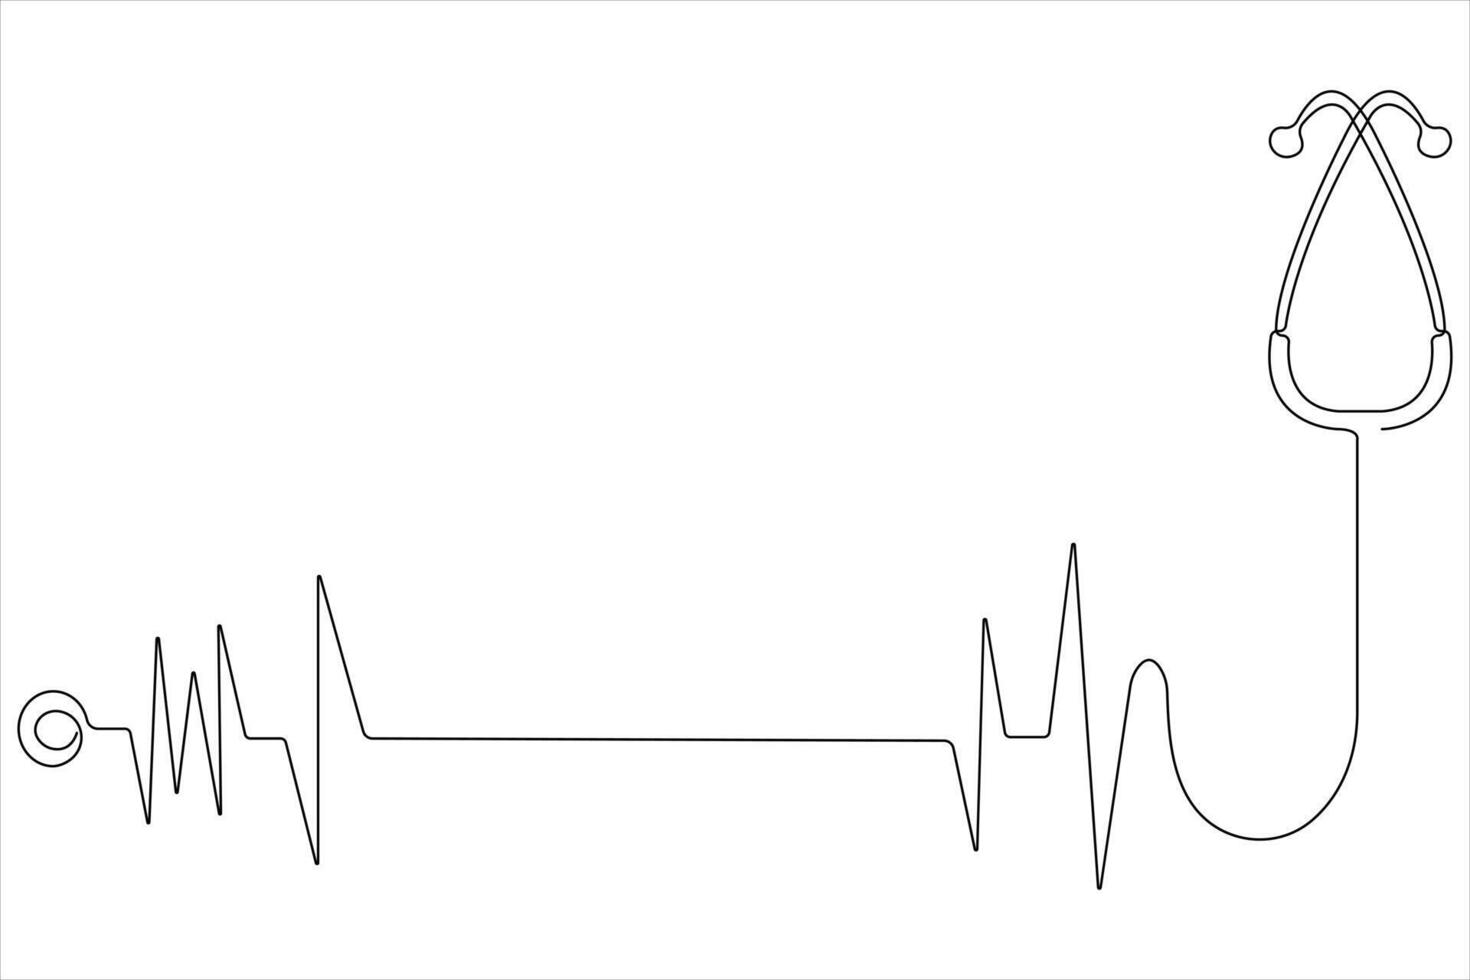 doorlopend een lijn kunst tekening van stethoscoop met hart ritme Golf schets vector